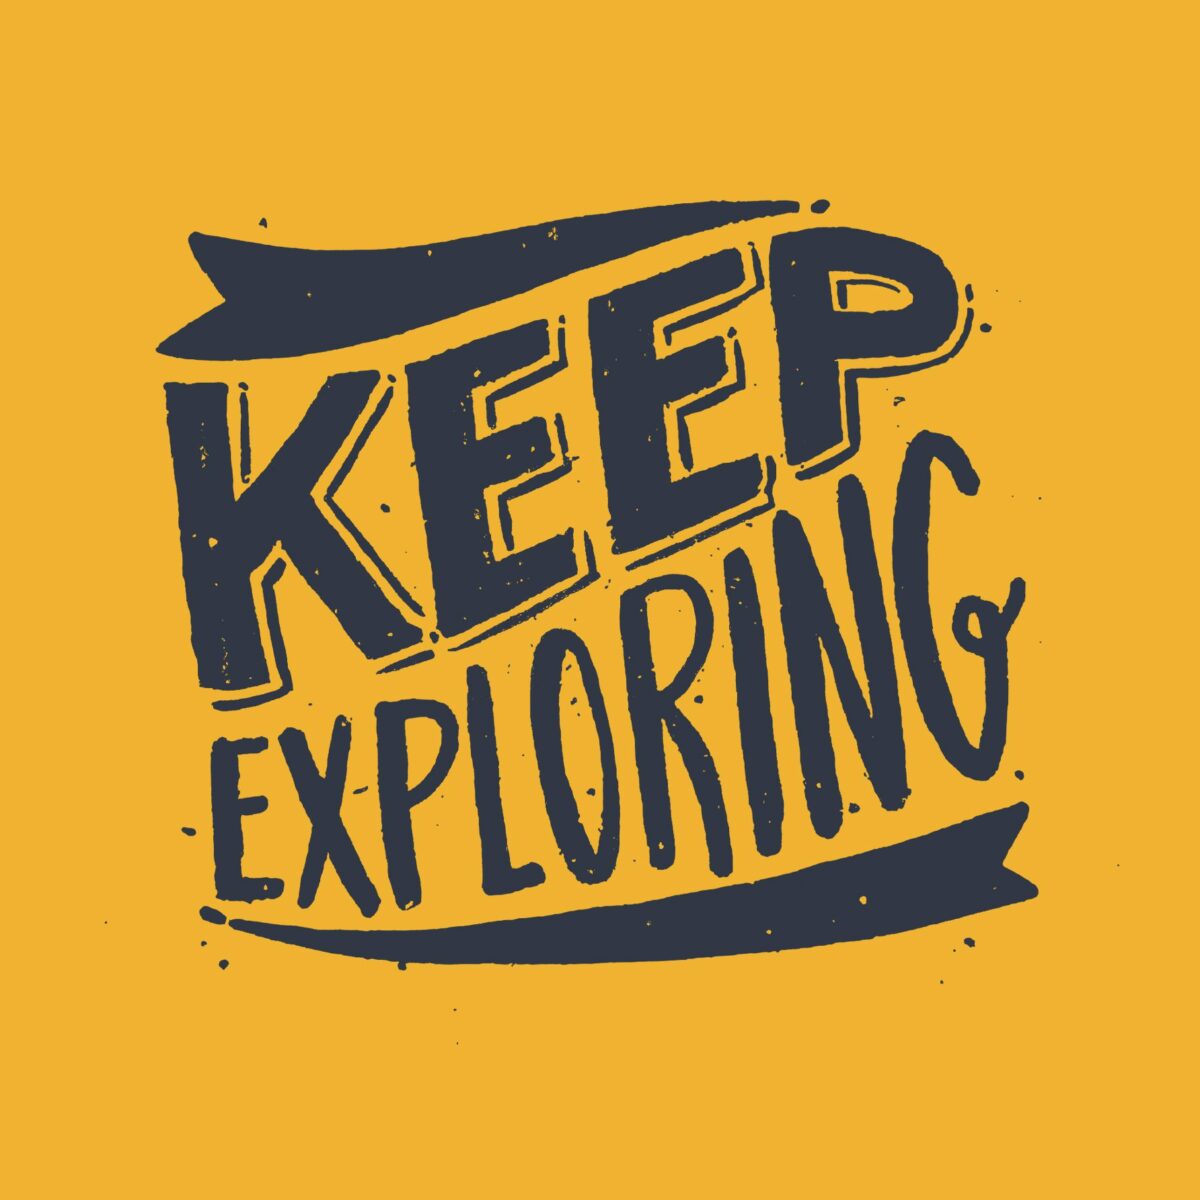 Keep Exploring